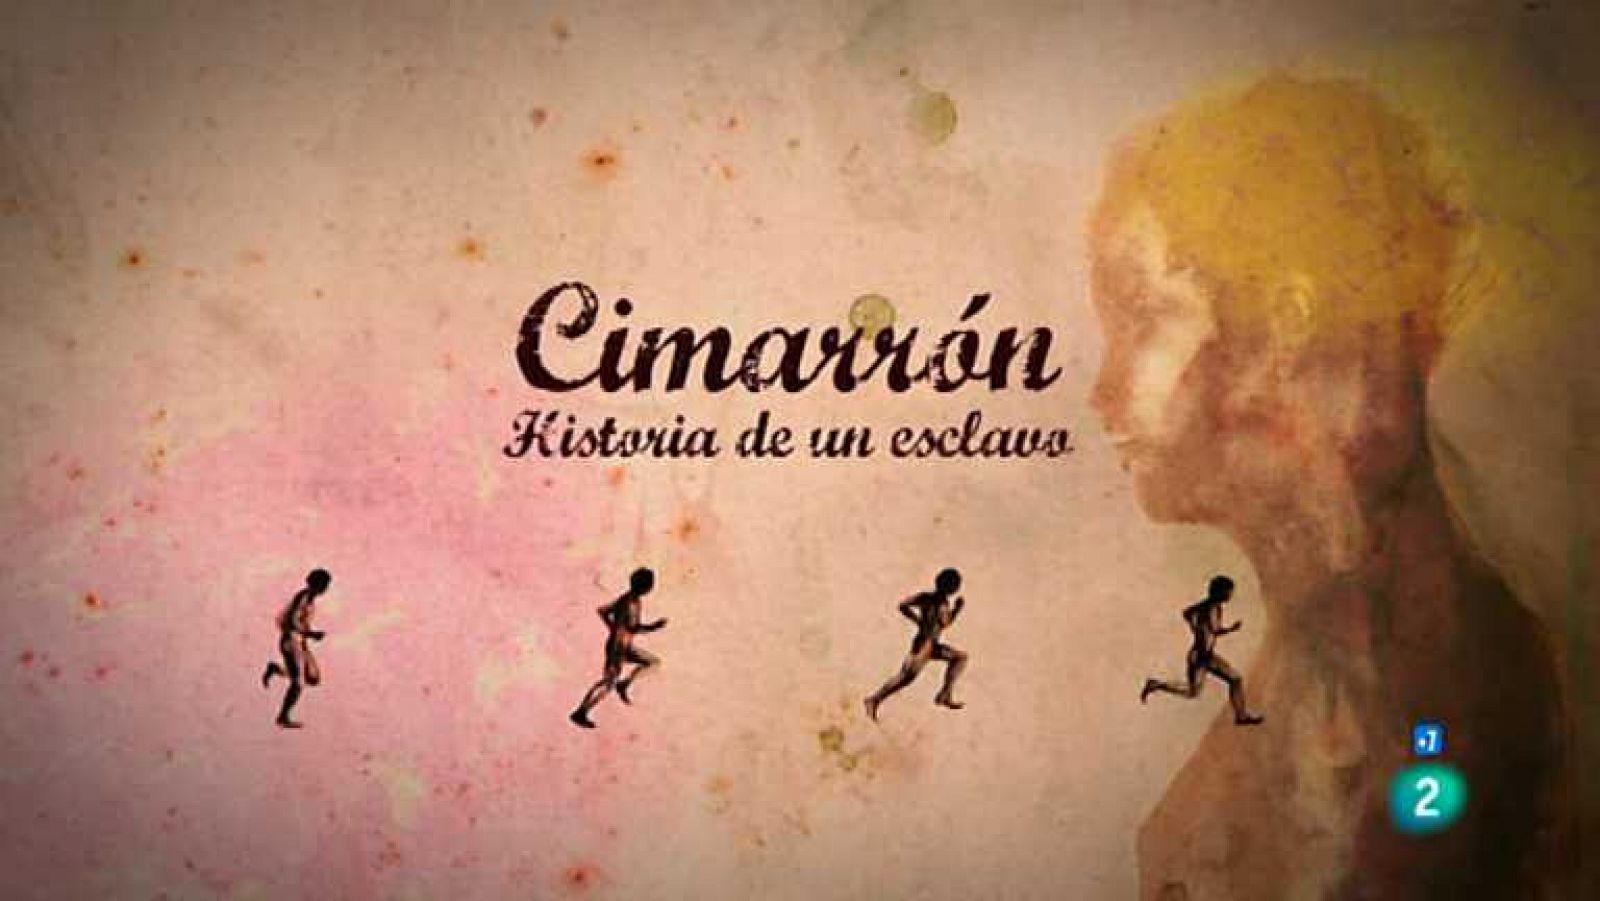 El documental de La 2 - Cimarrón, Historia de un esclavo